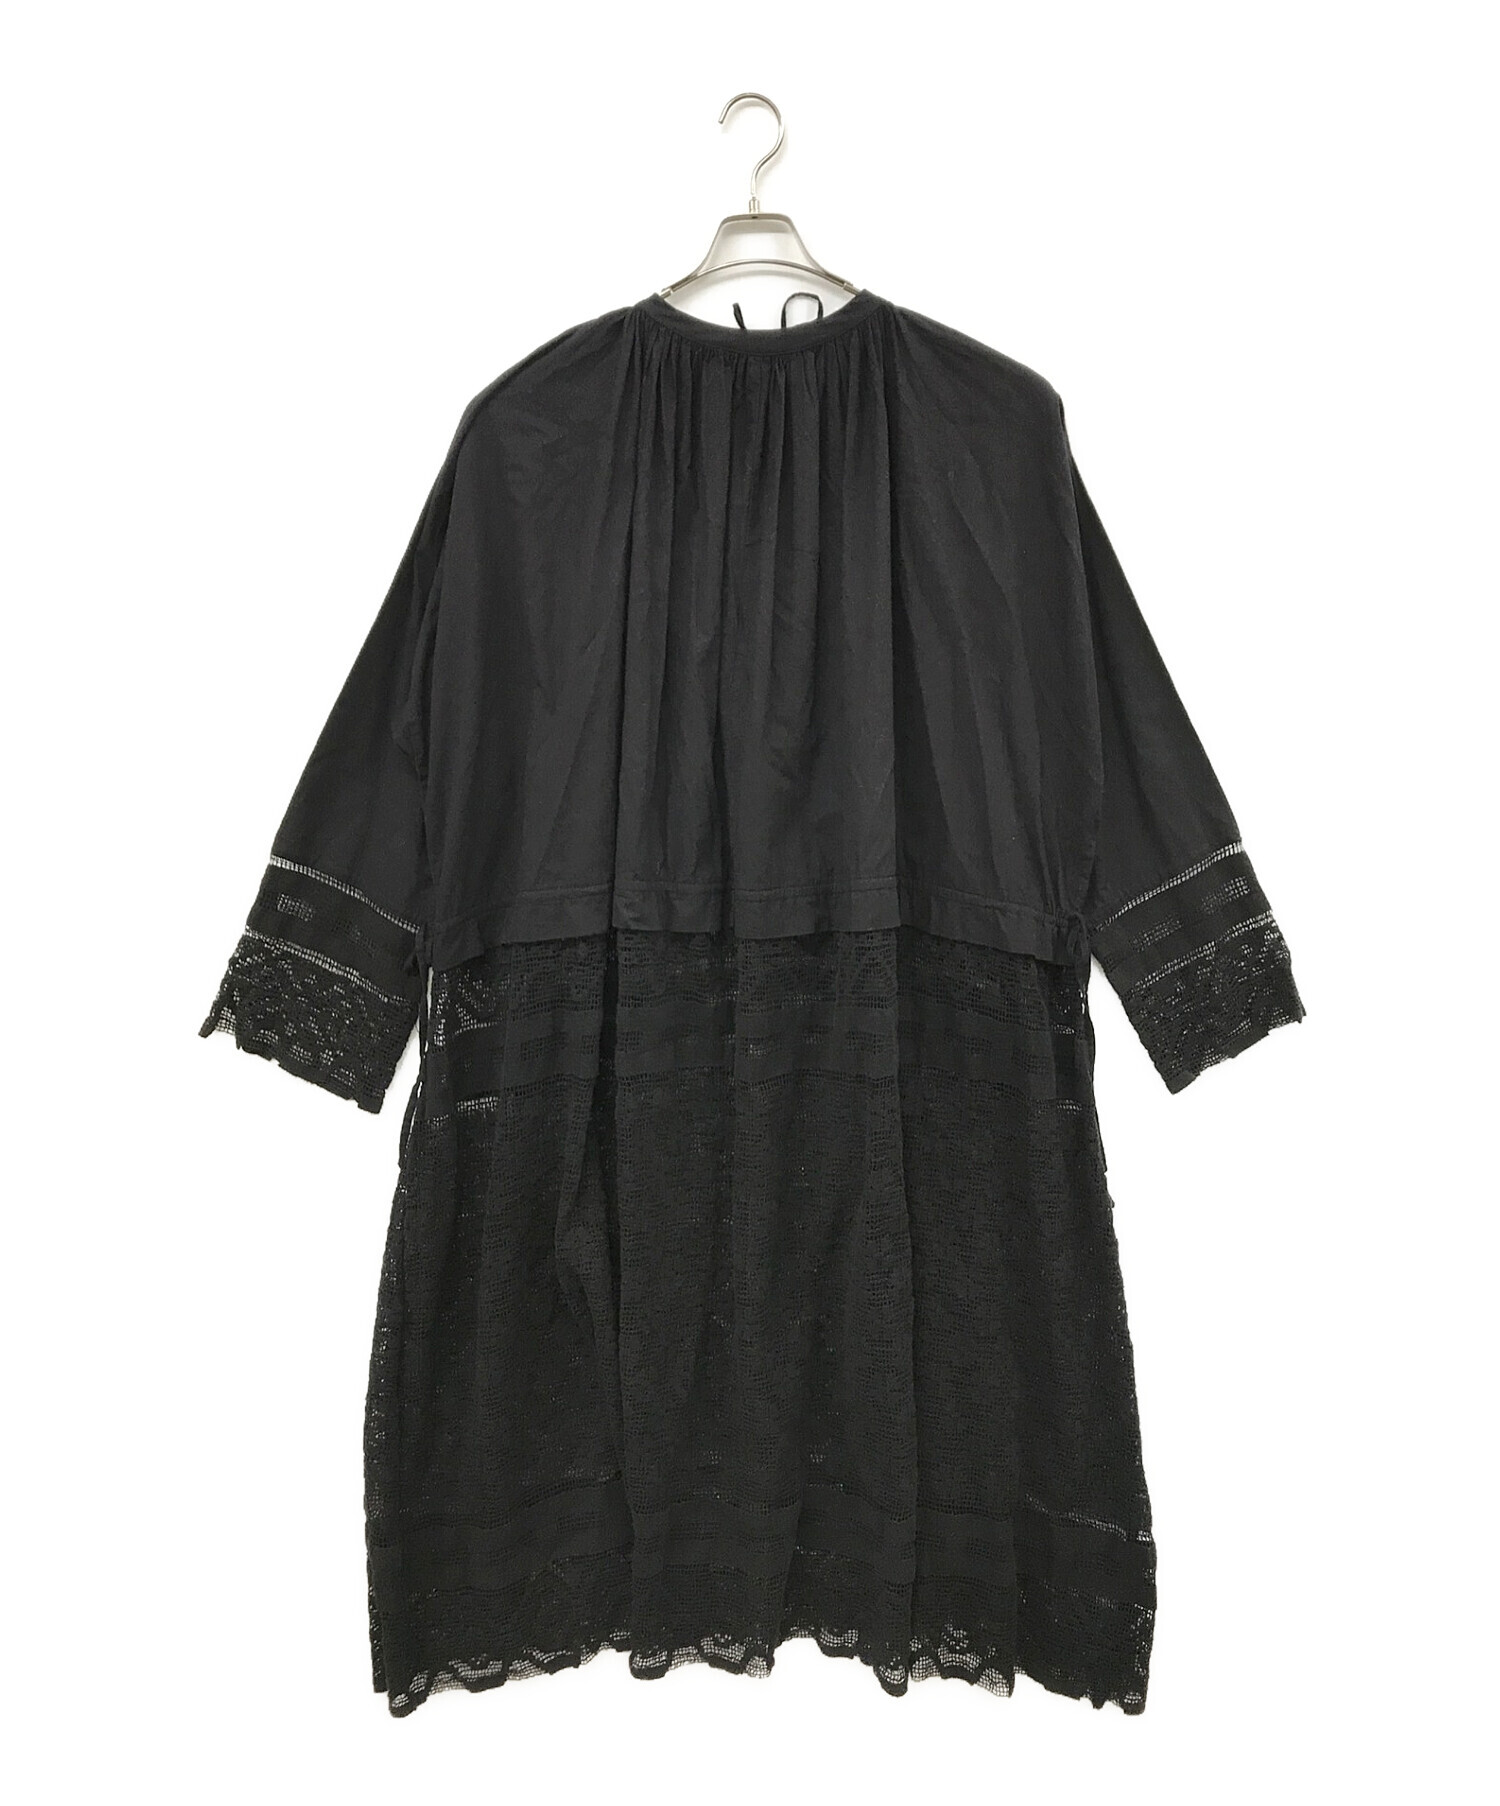 TODAYFUL (トゥデイフル) Church Lace Dress チャーチレースドレス ブラック サイズ:SIZE 38